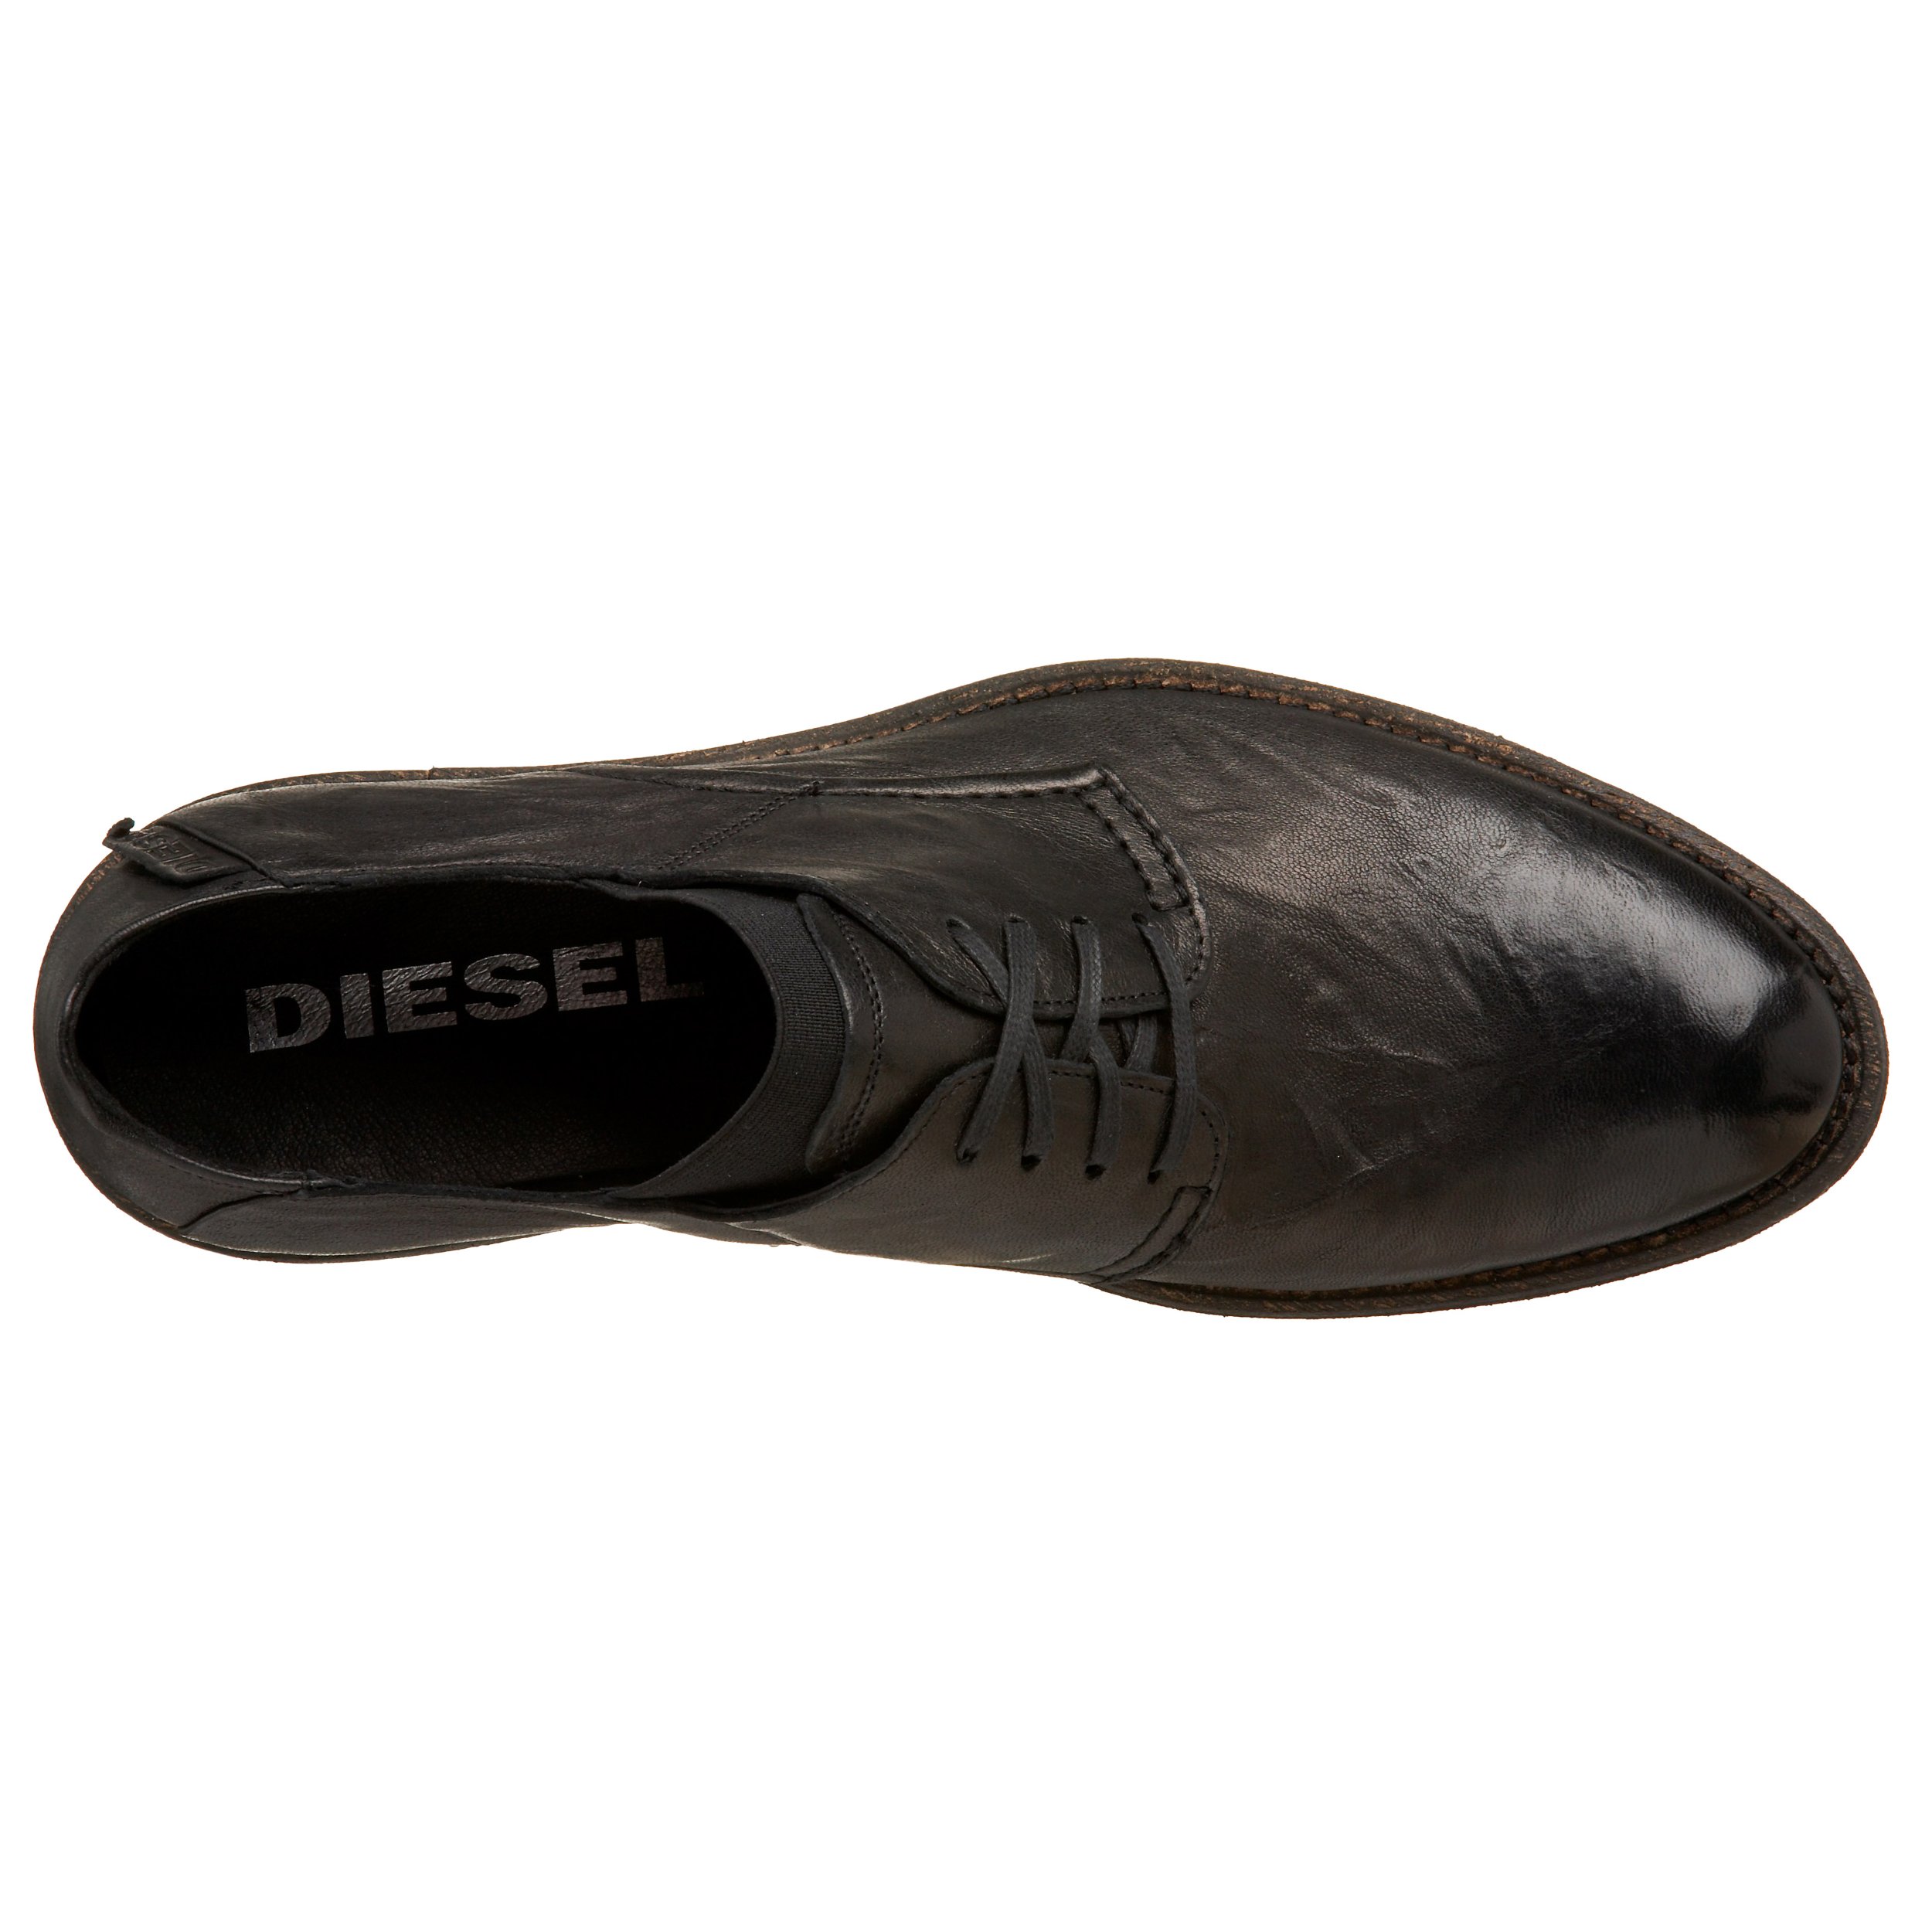 Diesel Men's Dress-in-Lace Fashion Sneaker